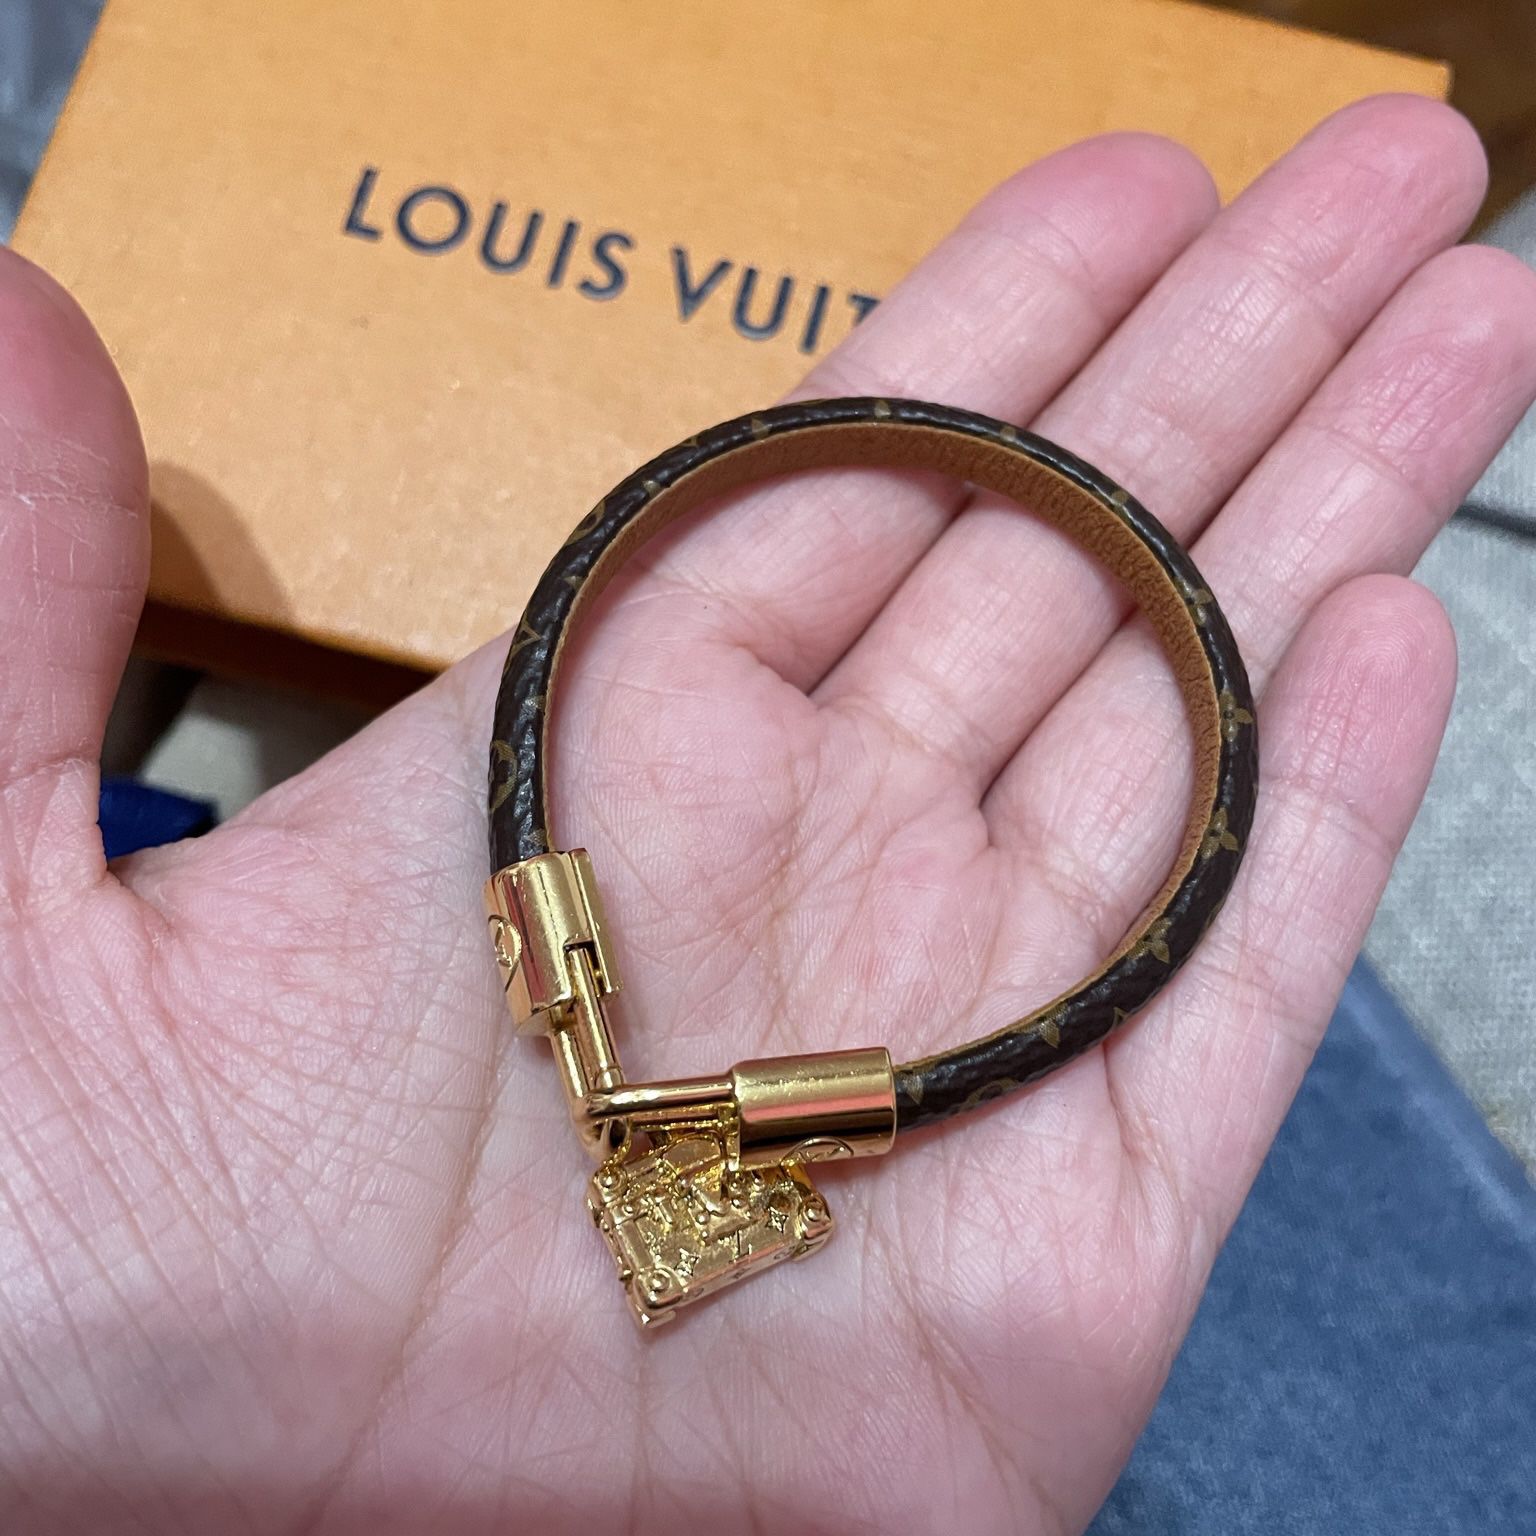 Louis Vuitton Petite Malle Charm Bracelet Monogram Canvas. Size 19